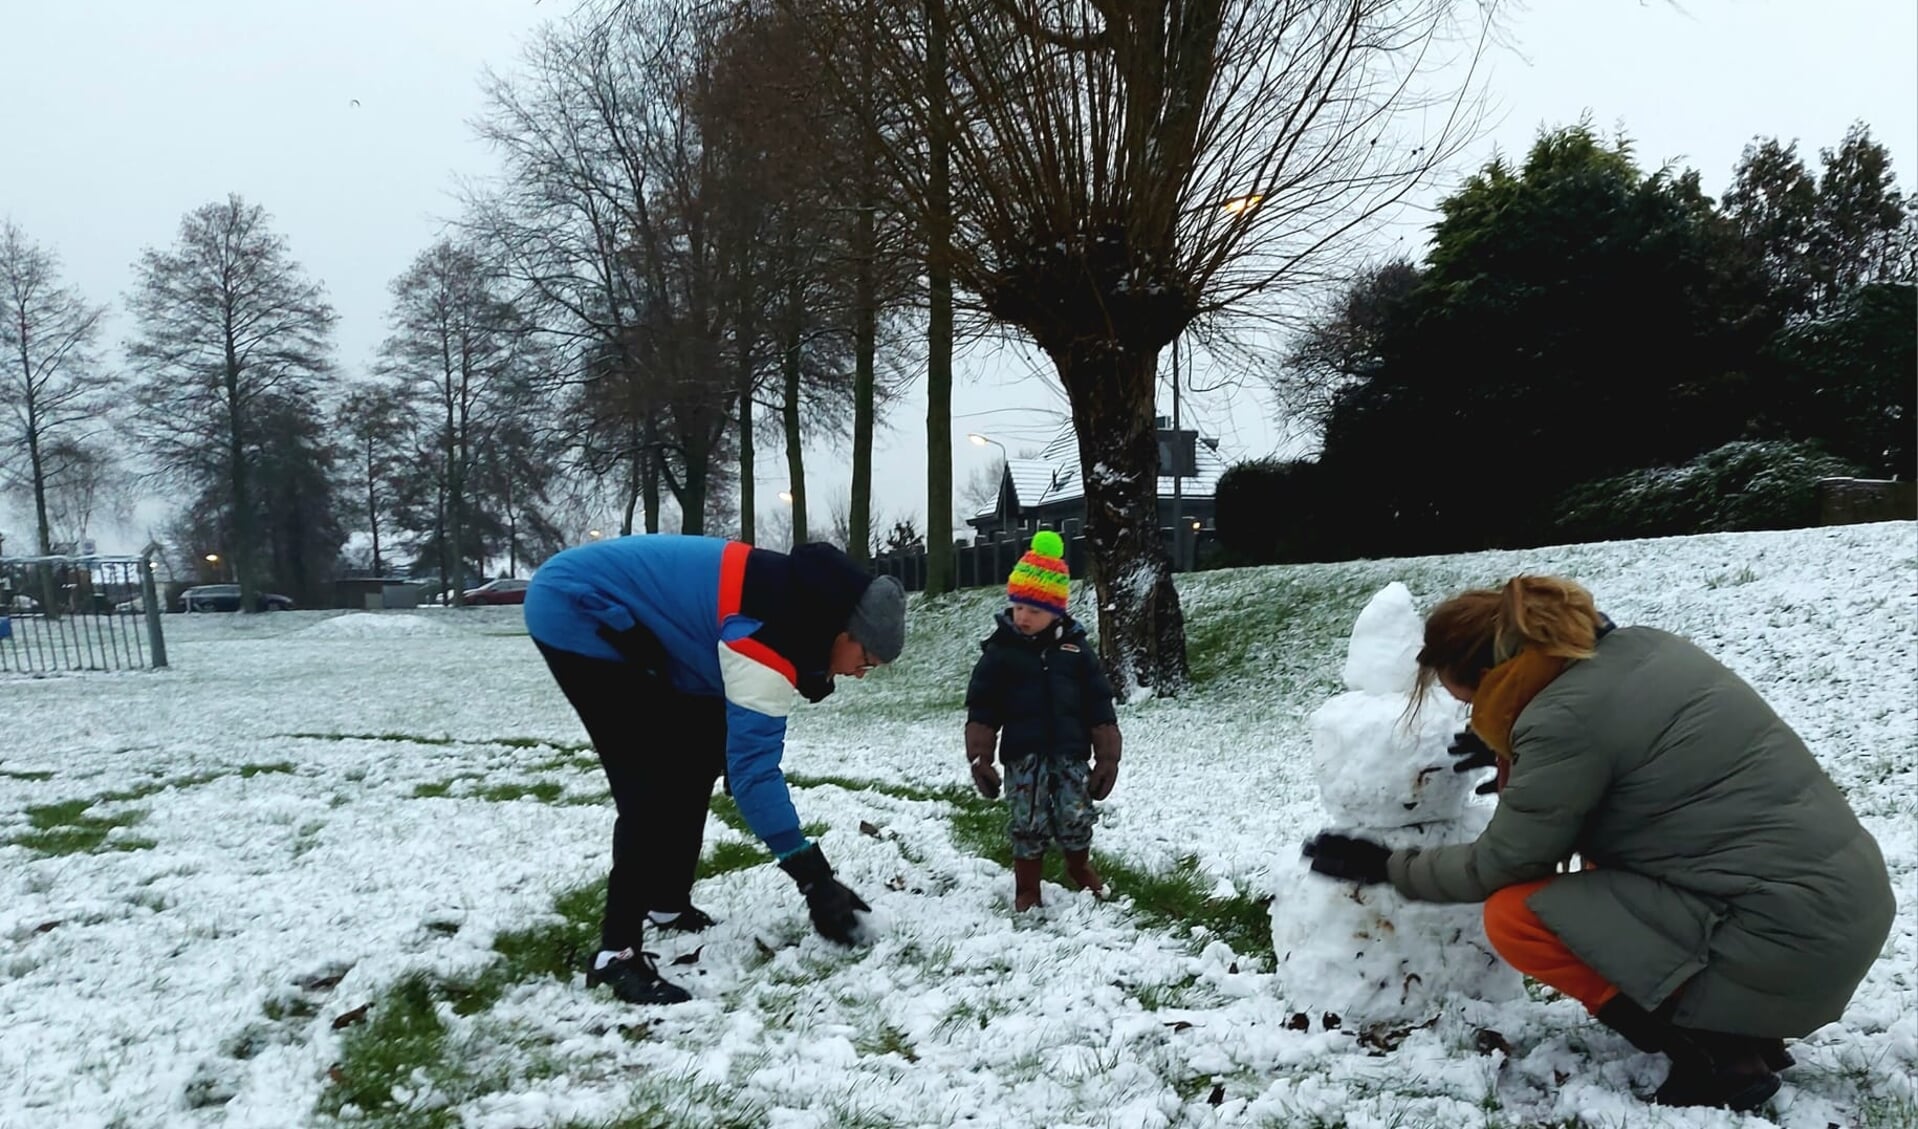 Max overziet het bouwen van een sneeuwpop